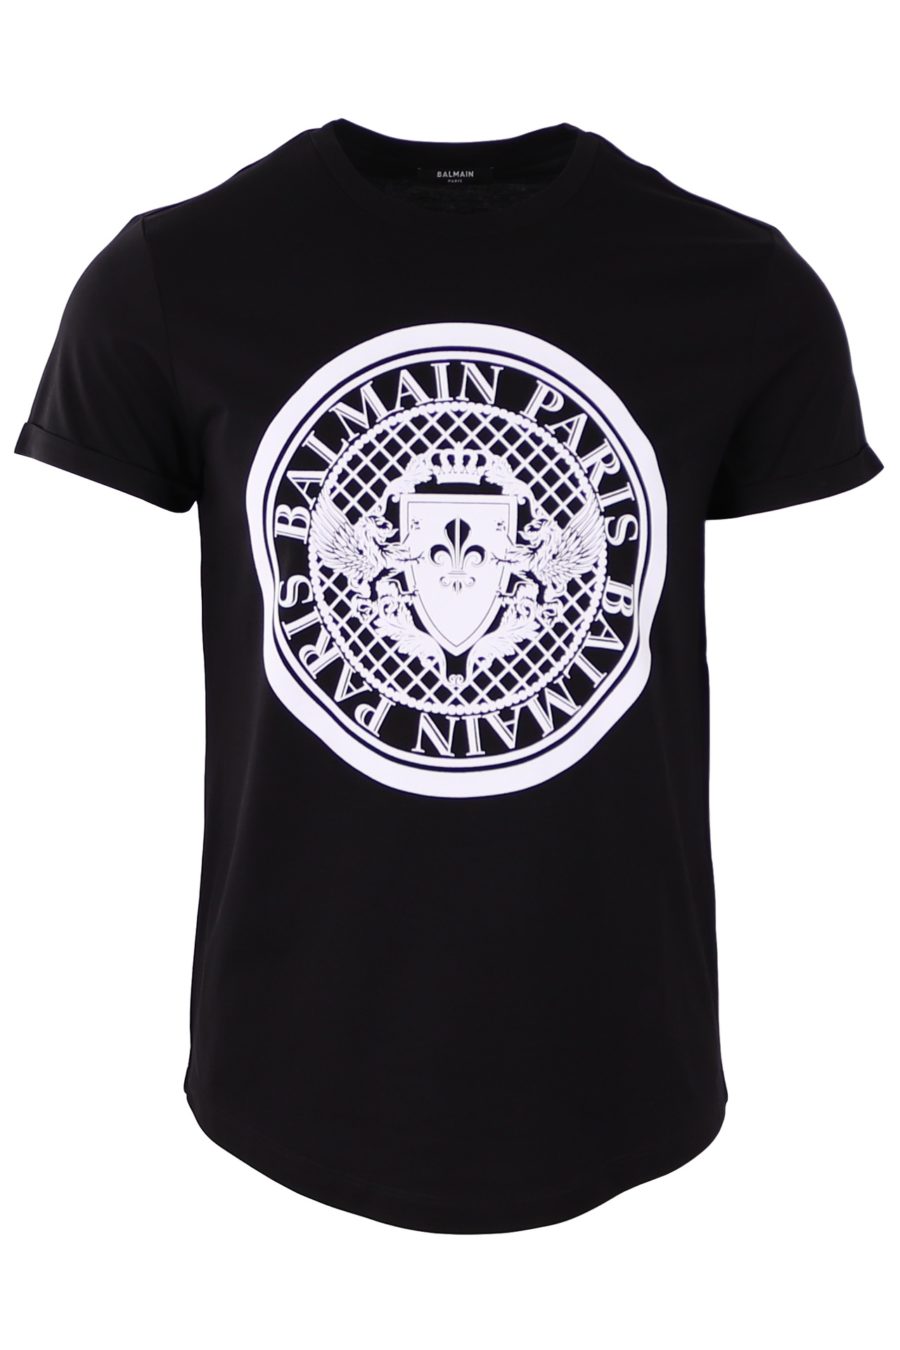 T-shirt Balmain black velvet round logo - ec399fb198d4124f15e09dcb309de15acaf1baf7